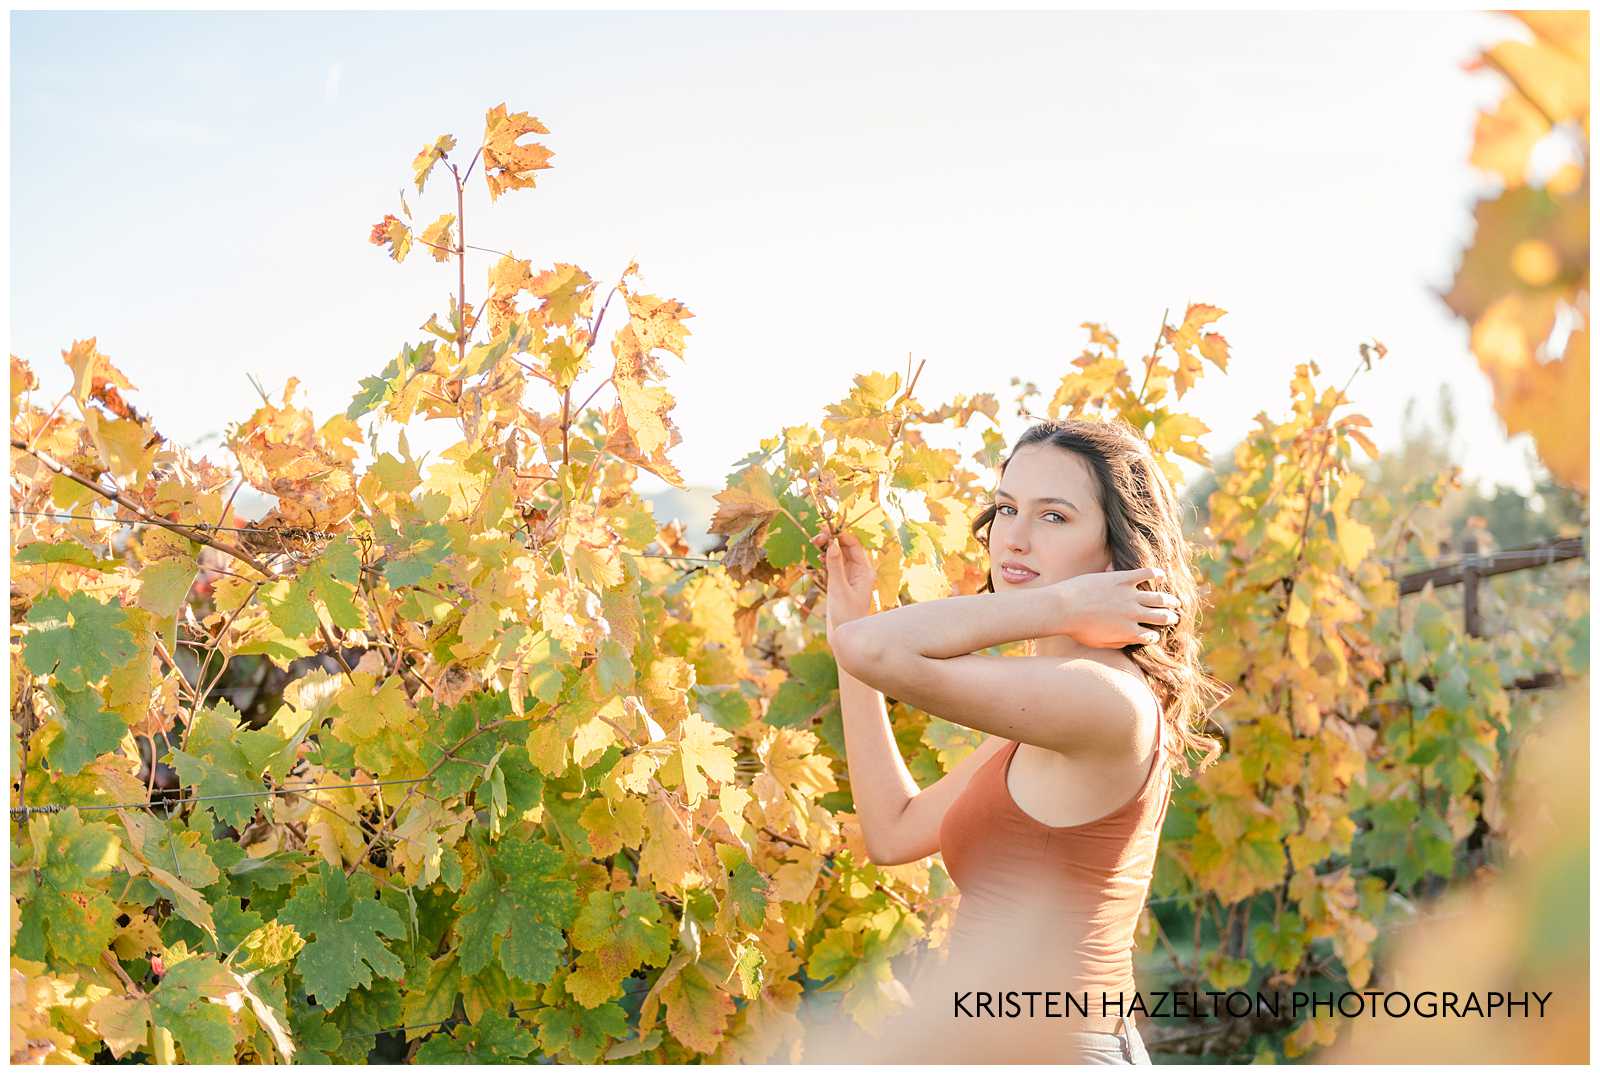 Girl wearing orange shirt in a vineyard